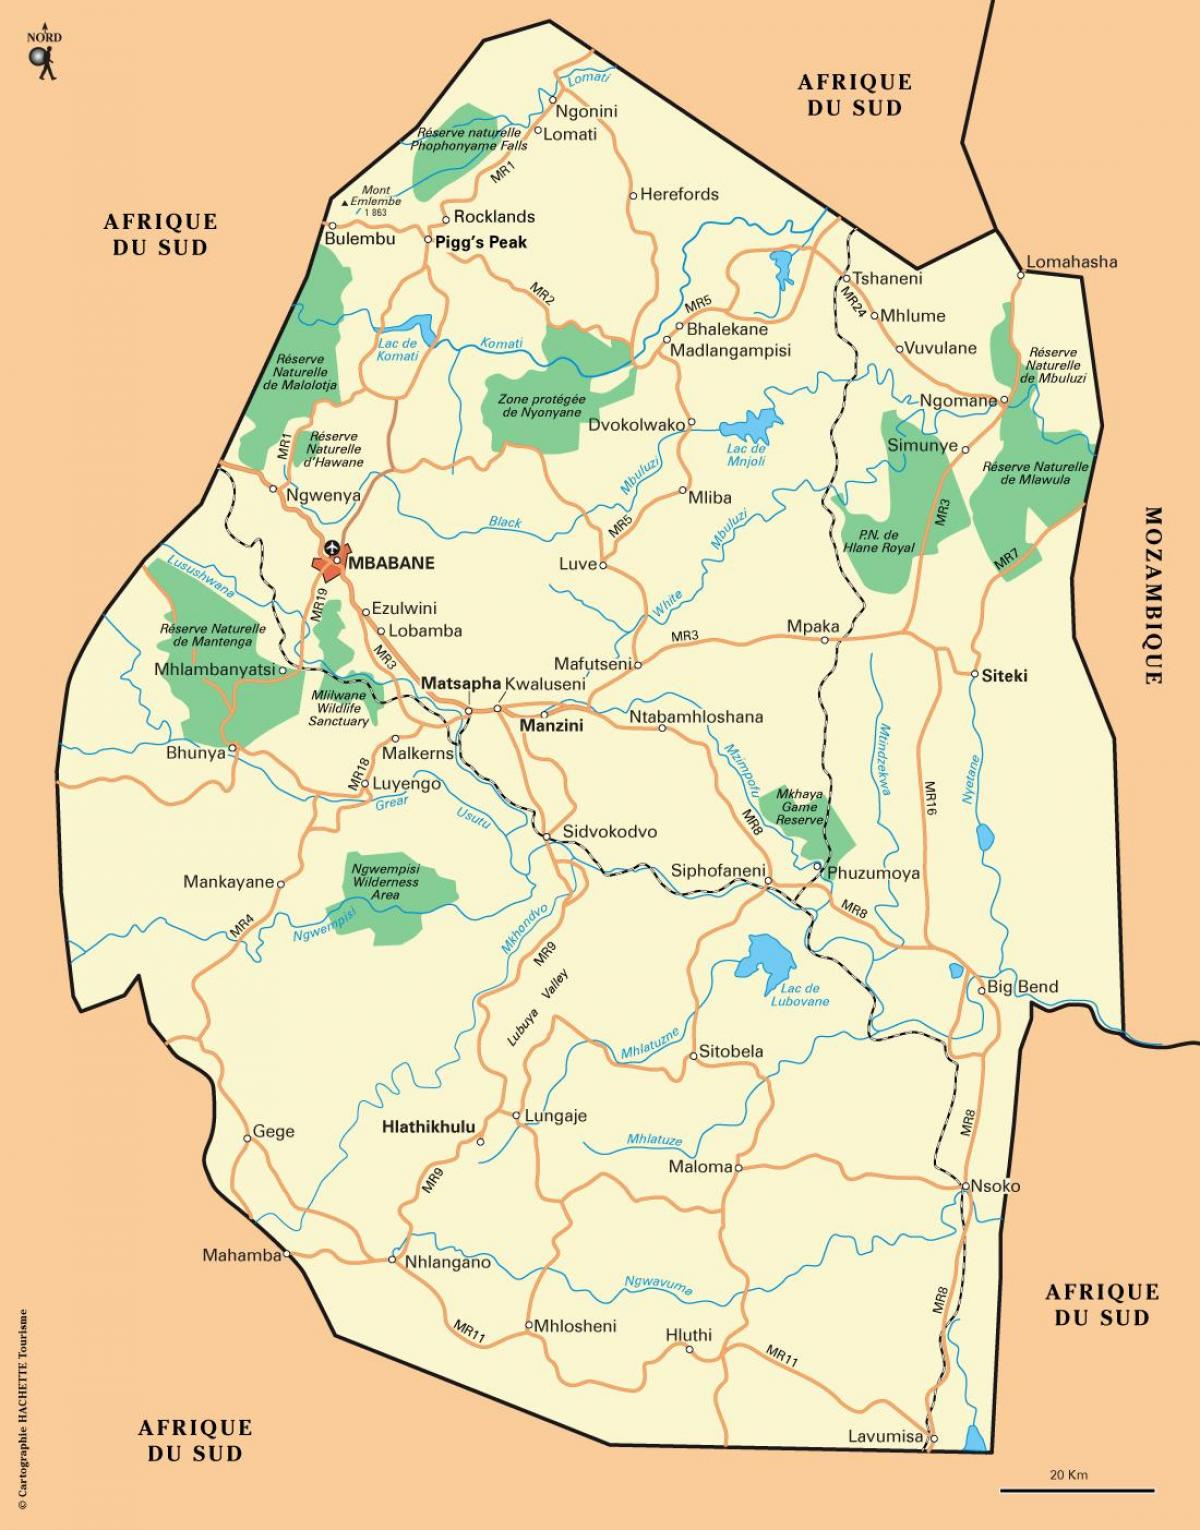 ezulwini valley, Swazimaa kartta